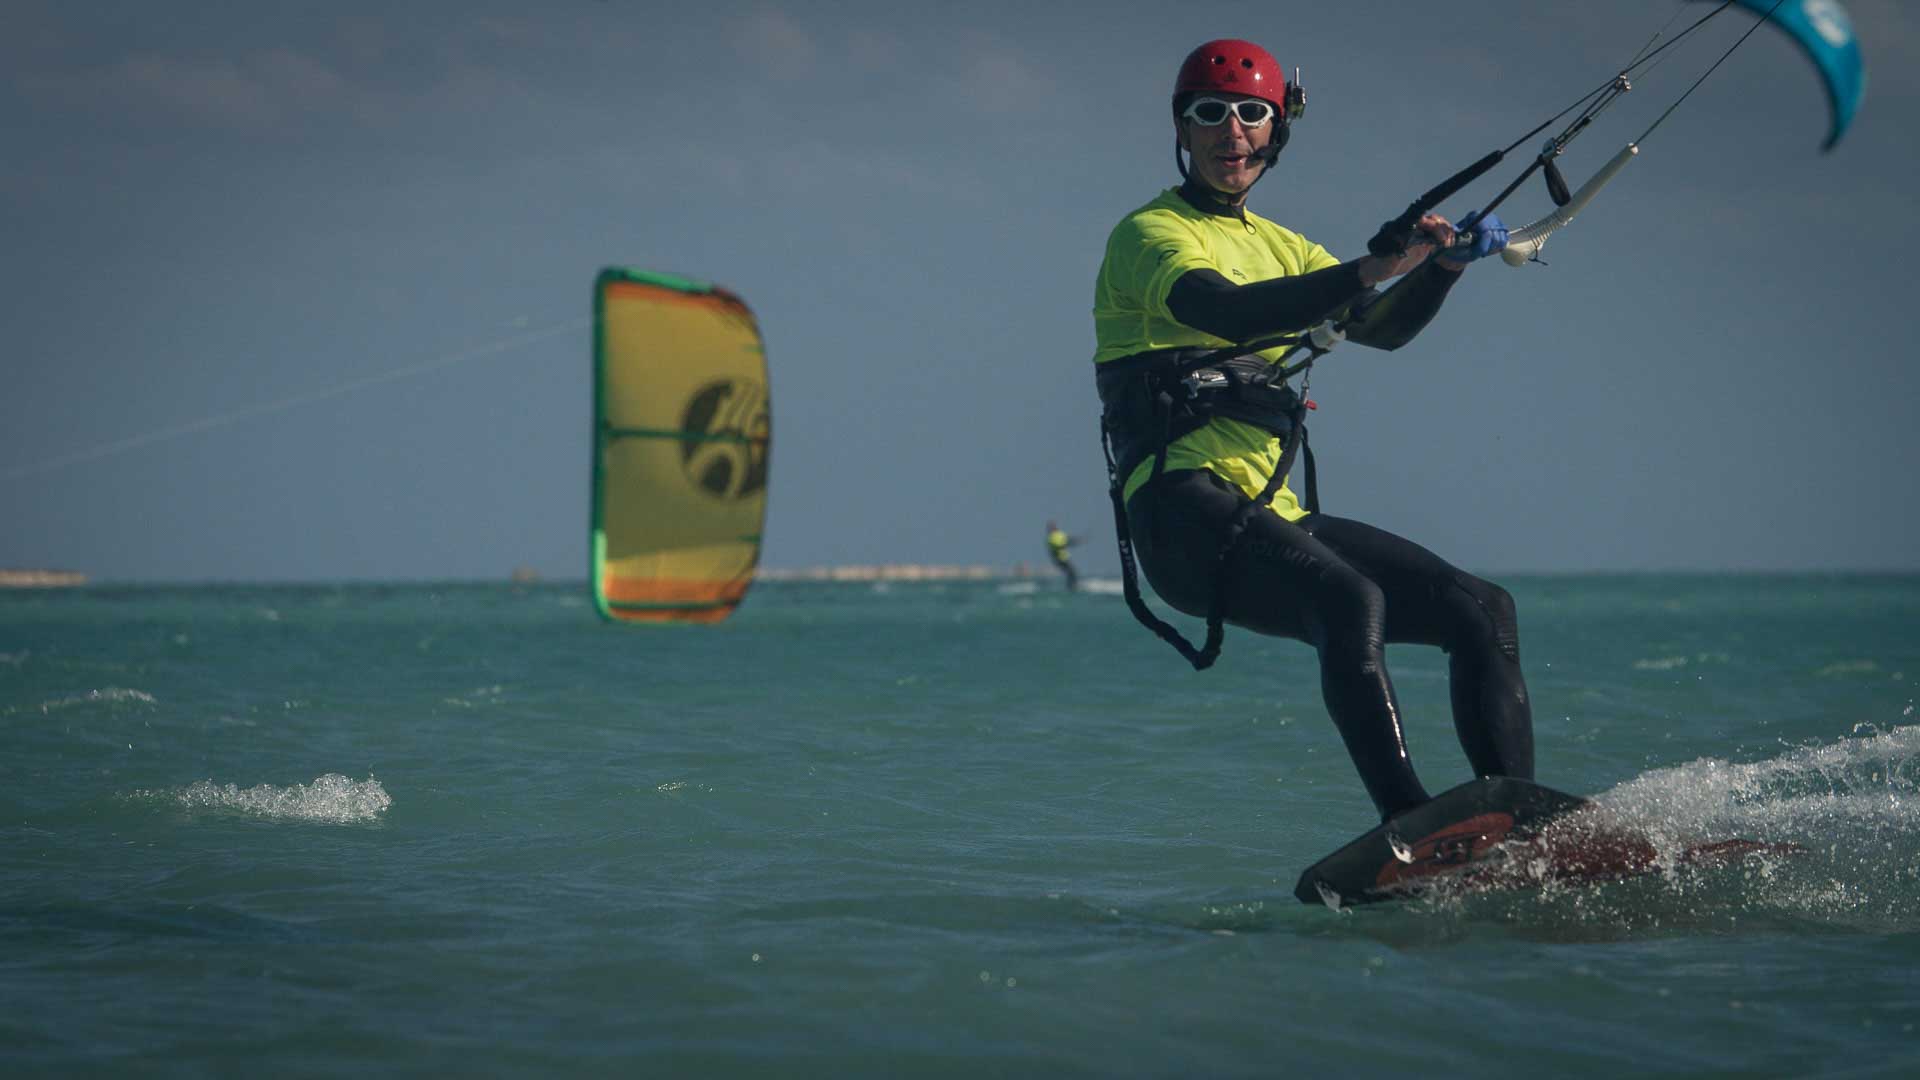 Kiter surft am Wasser mit Funkhelm am Kopf